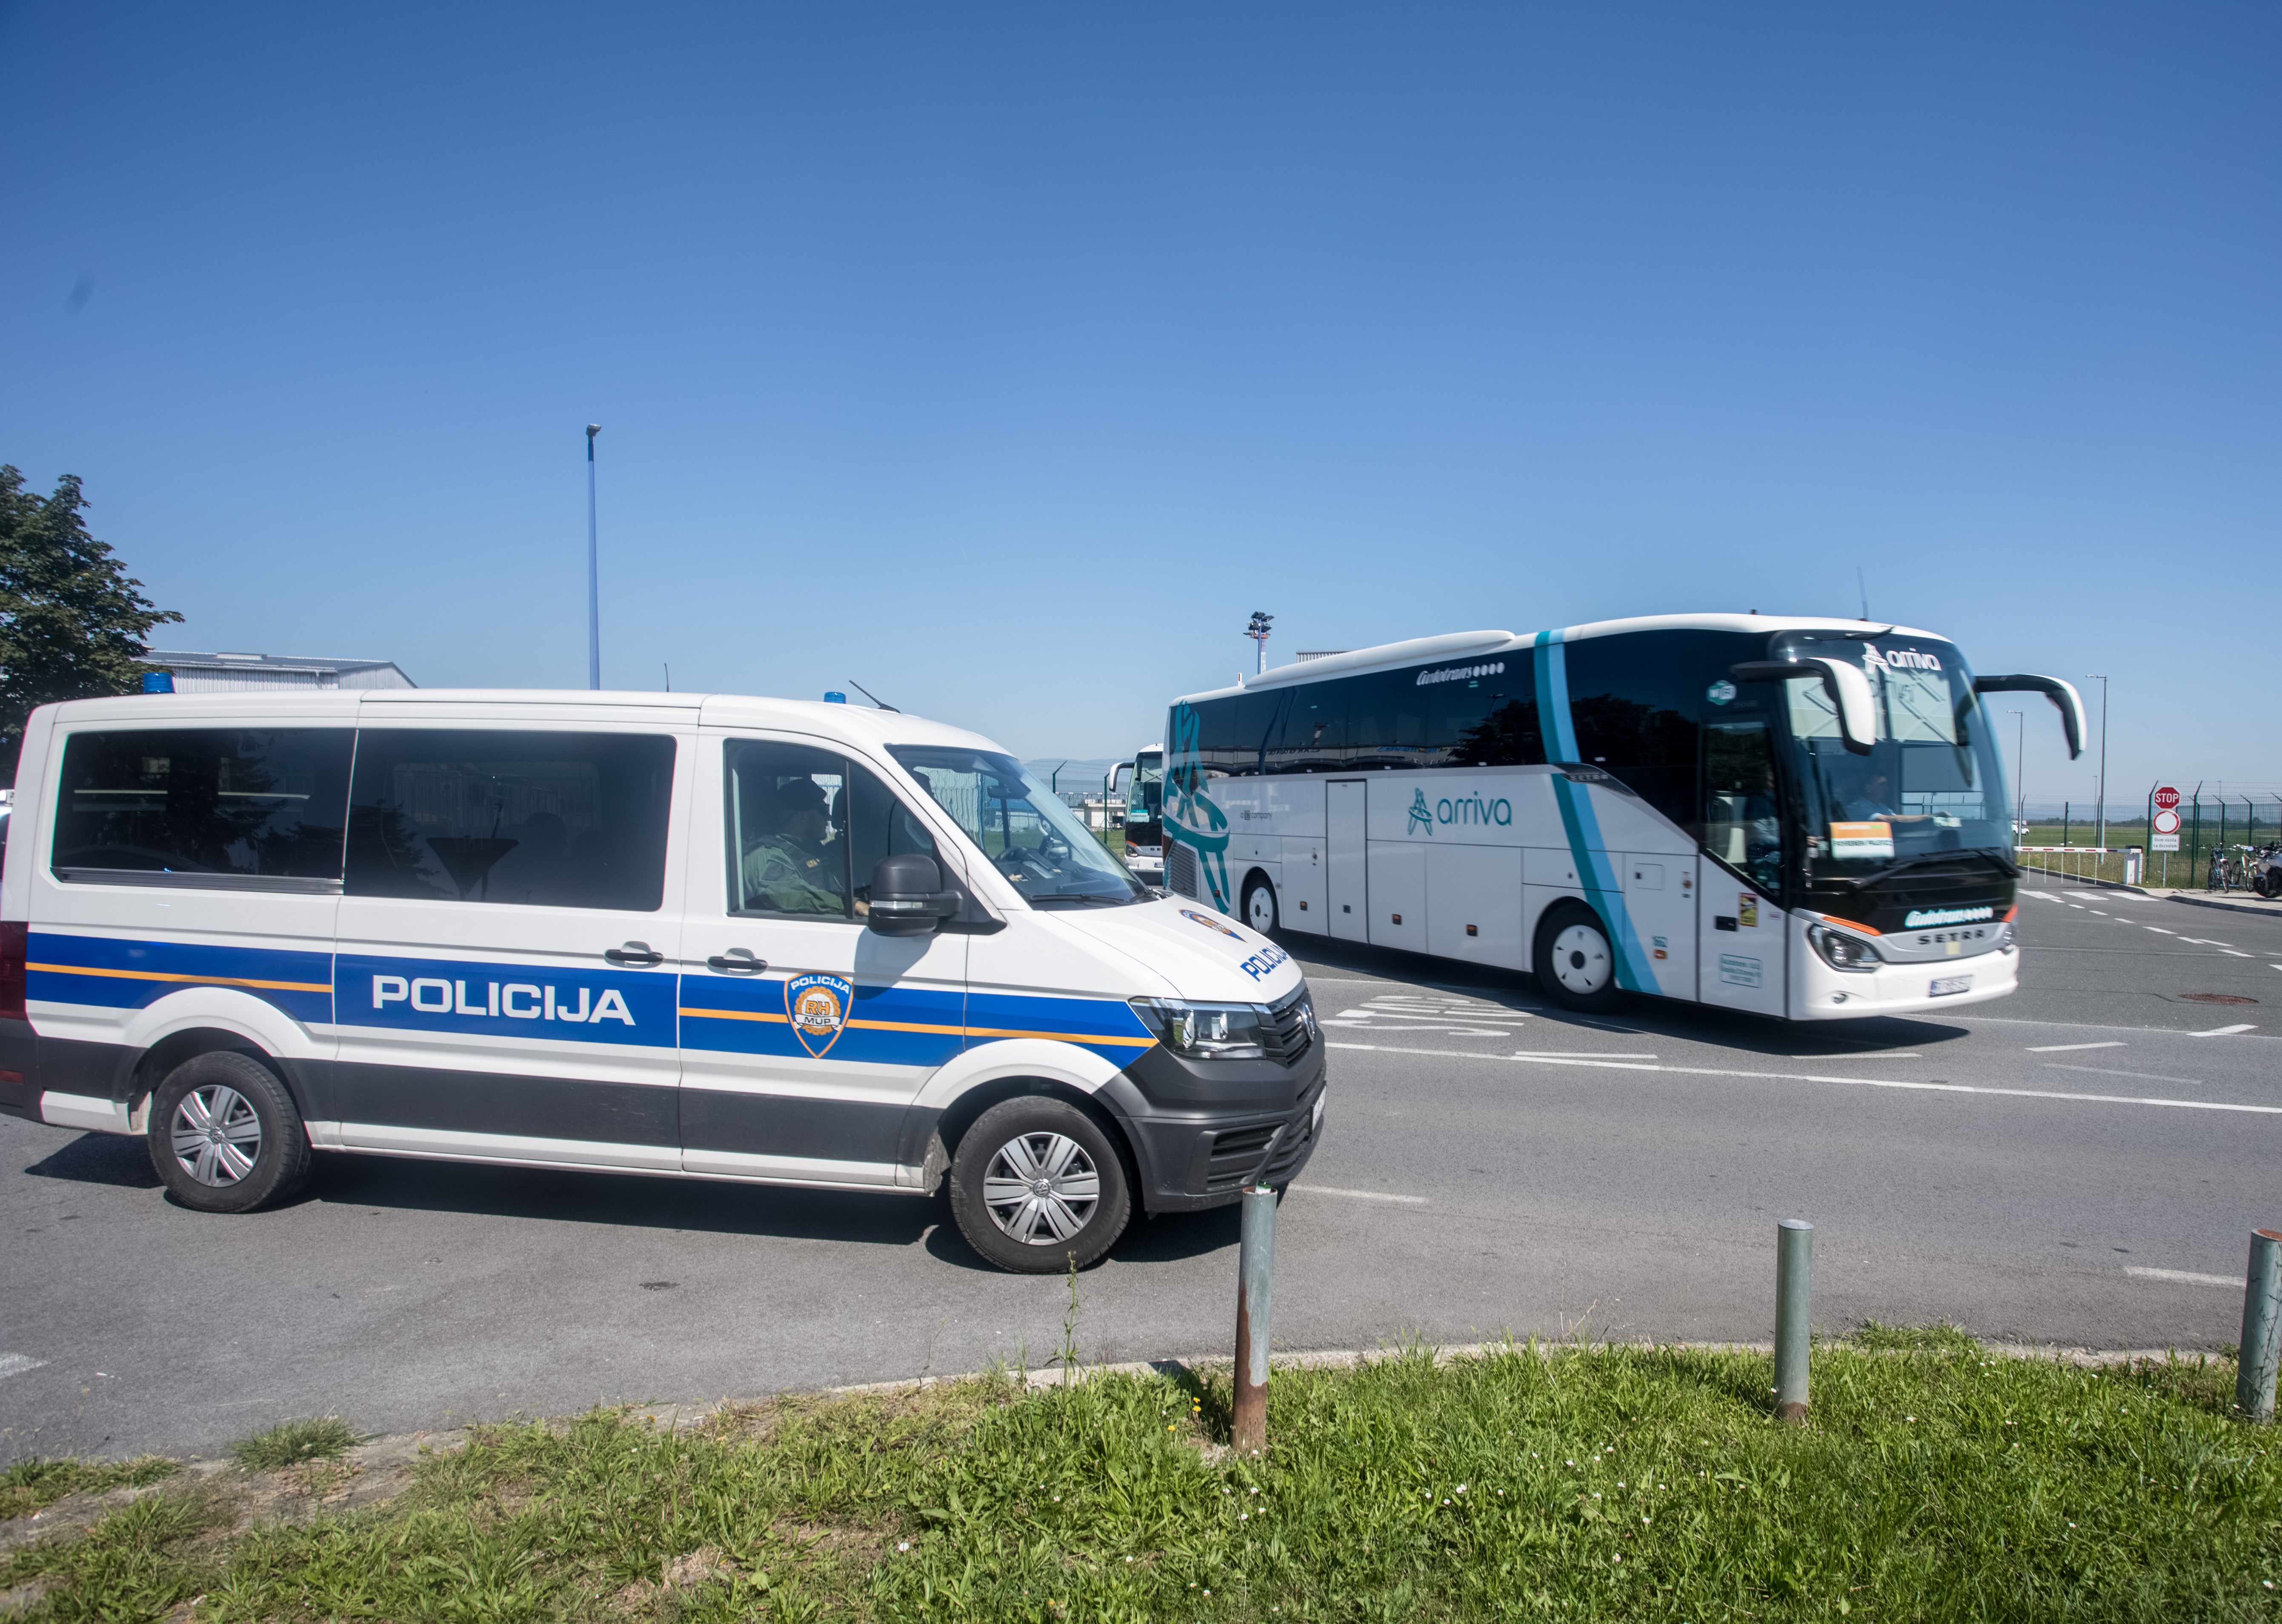 Σε κατάσταση πολιορκίας το Ζάγκρεμπ – Περιπολίες στην πόλη ακόμη και από αστυνομικούς με πολιτικά